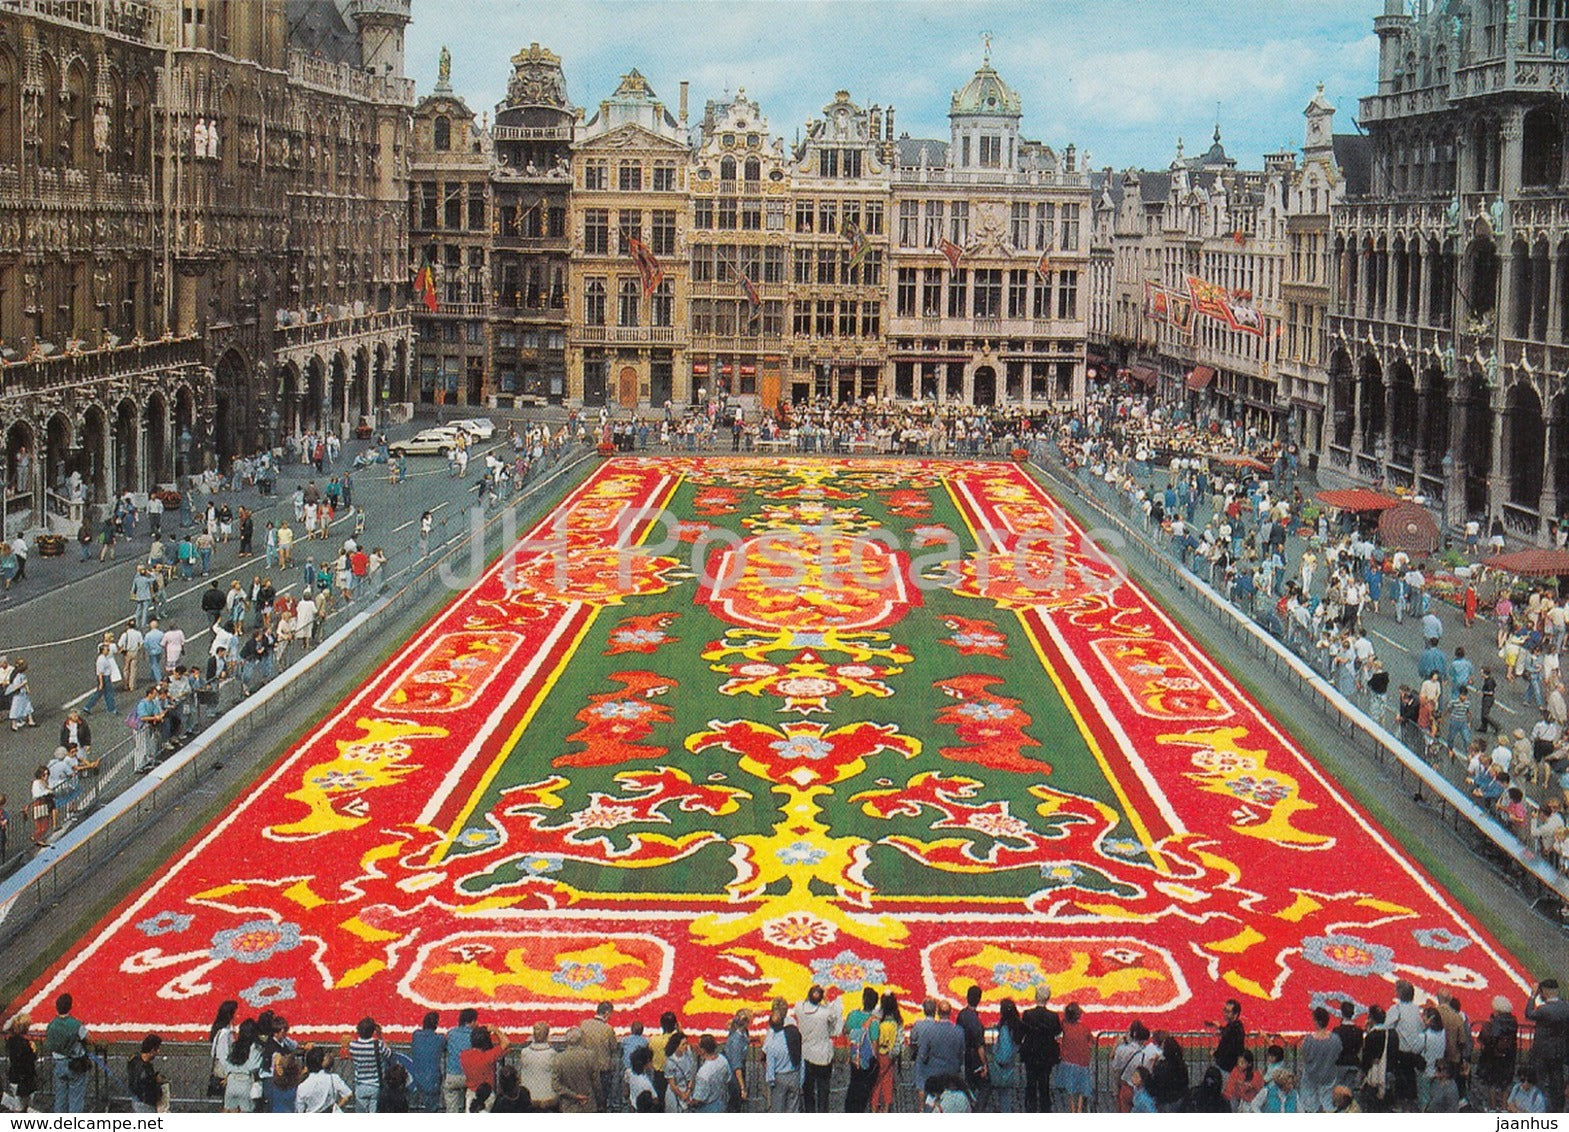 Brussels - Grand Place - Tapis de Fleurs - Market Place - Flower Carpet - Belgium - unused - JH Postcards